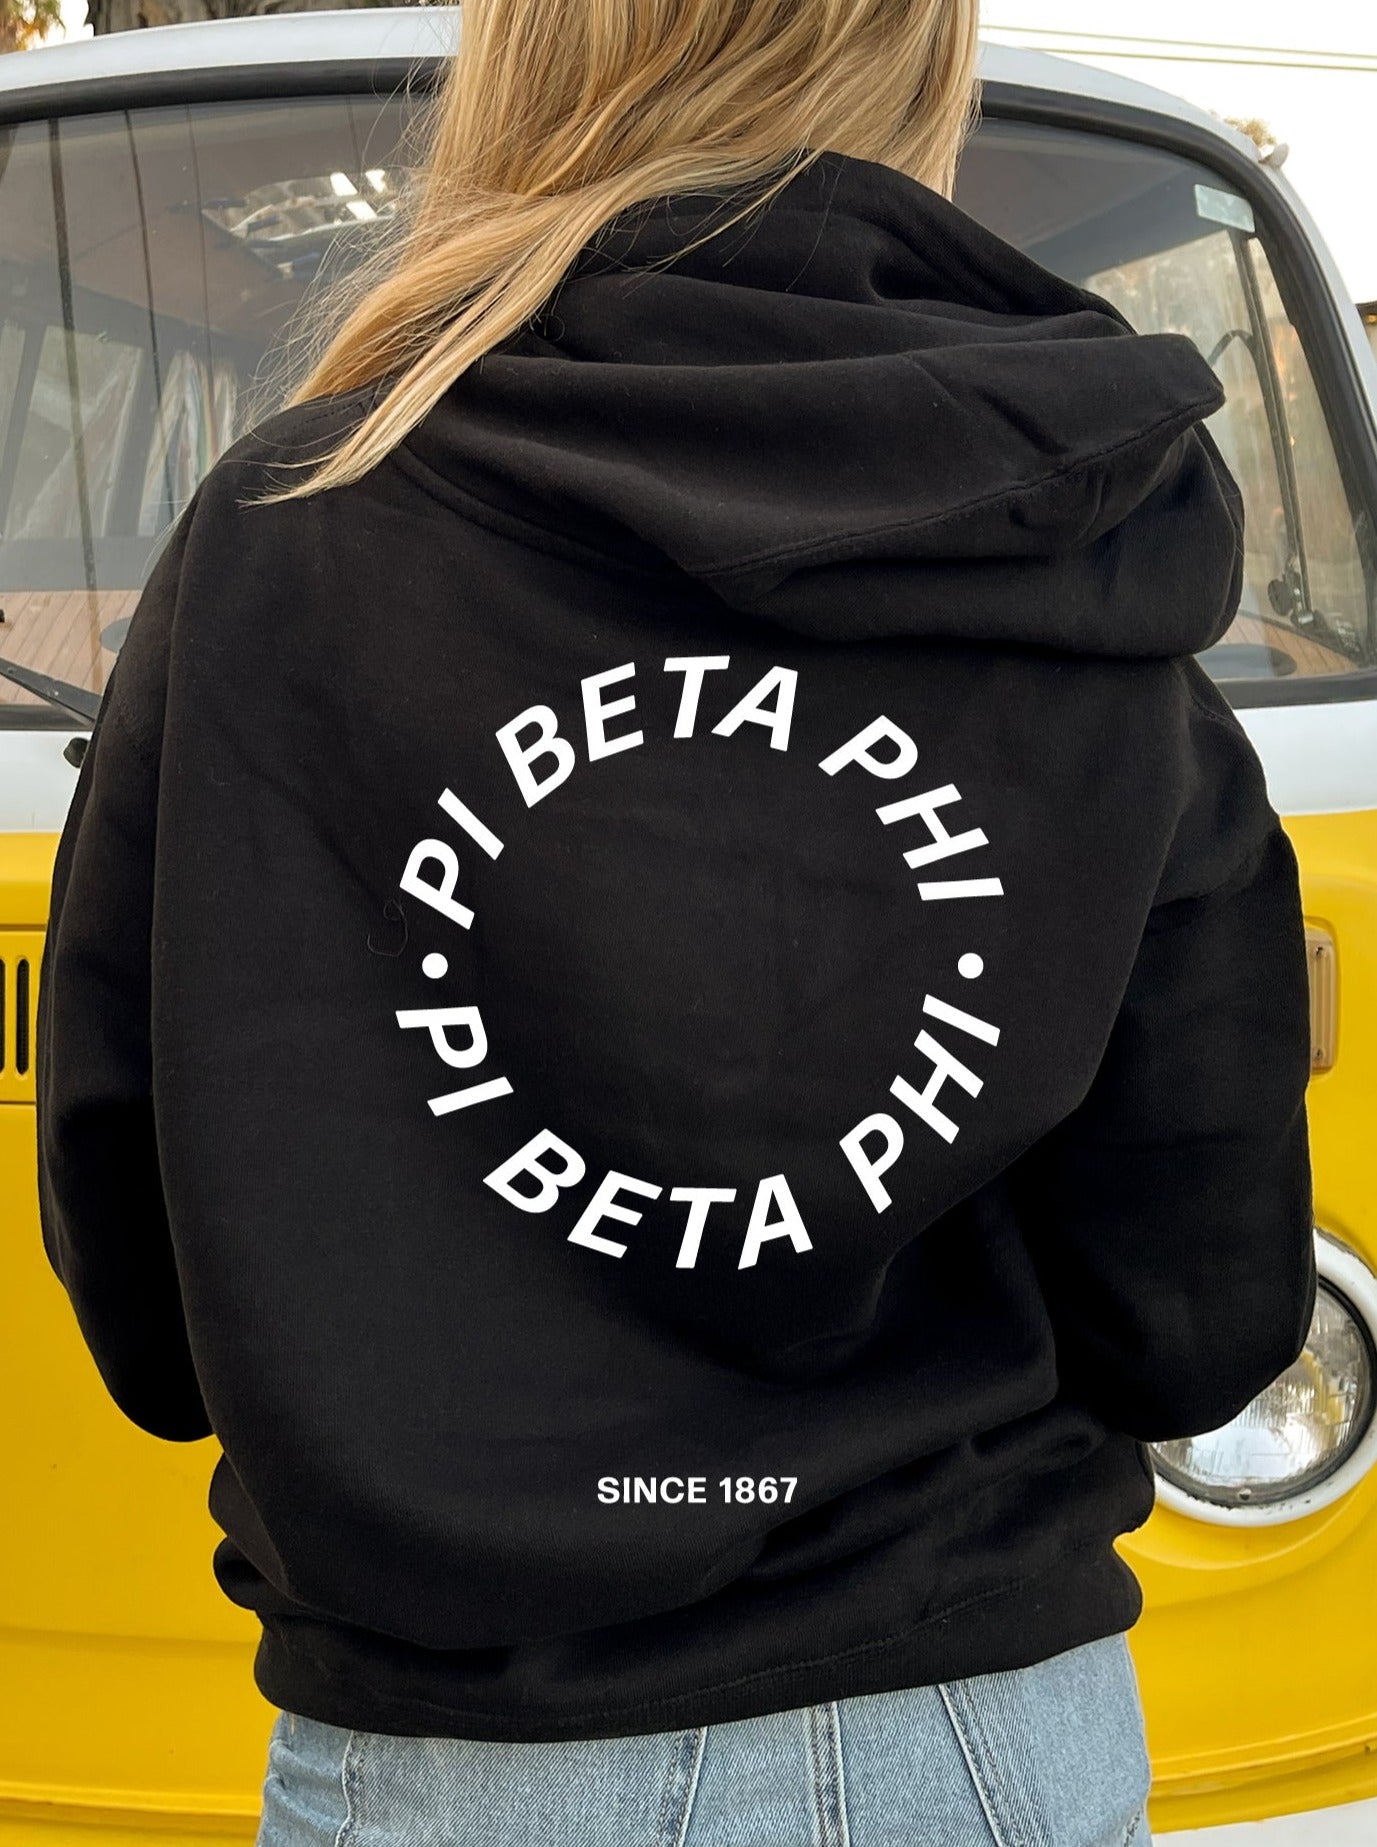 Pi Beta Phi Simple Trendy Cute Circle Sorority Hoodie Sweatshirt Design Black